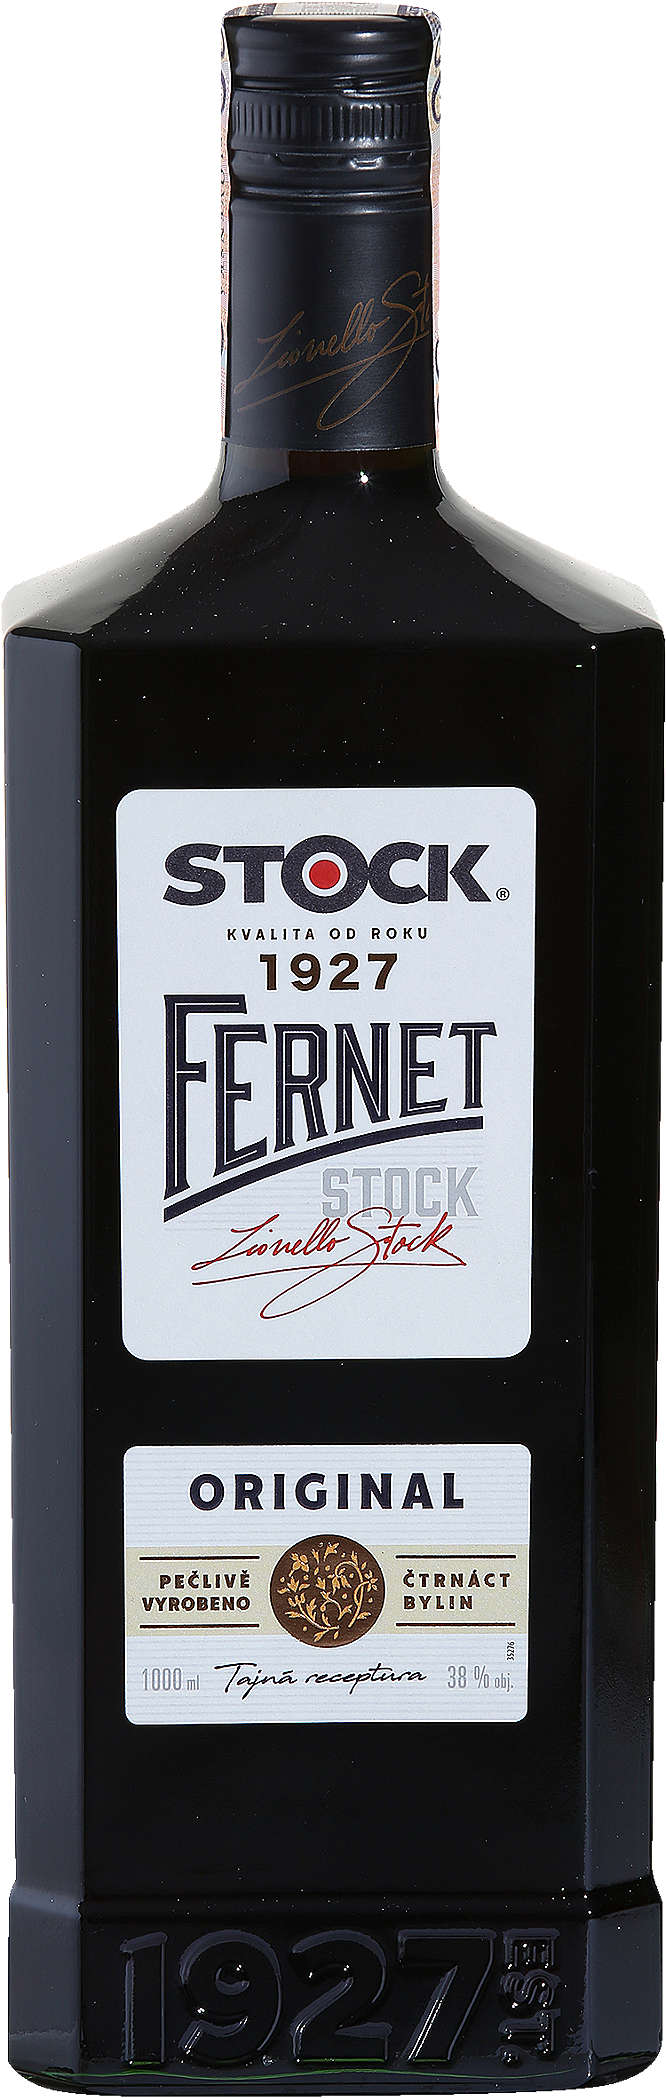 Zobrazenie výrobku Fernet Stock Fernet